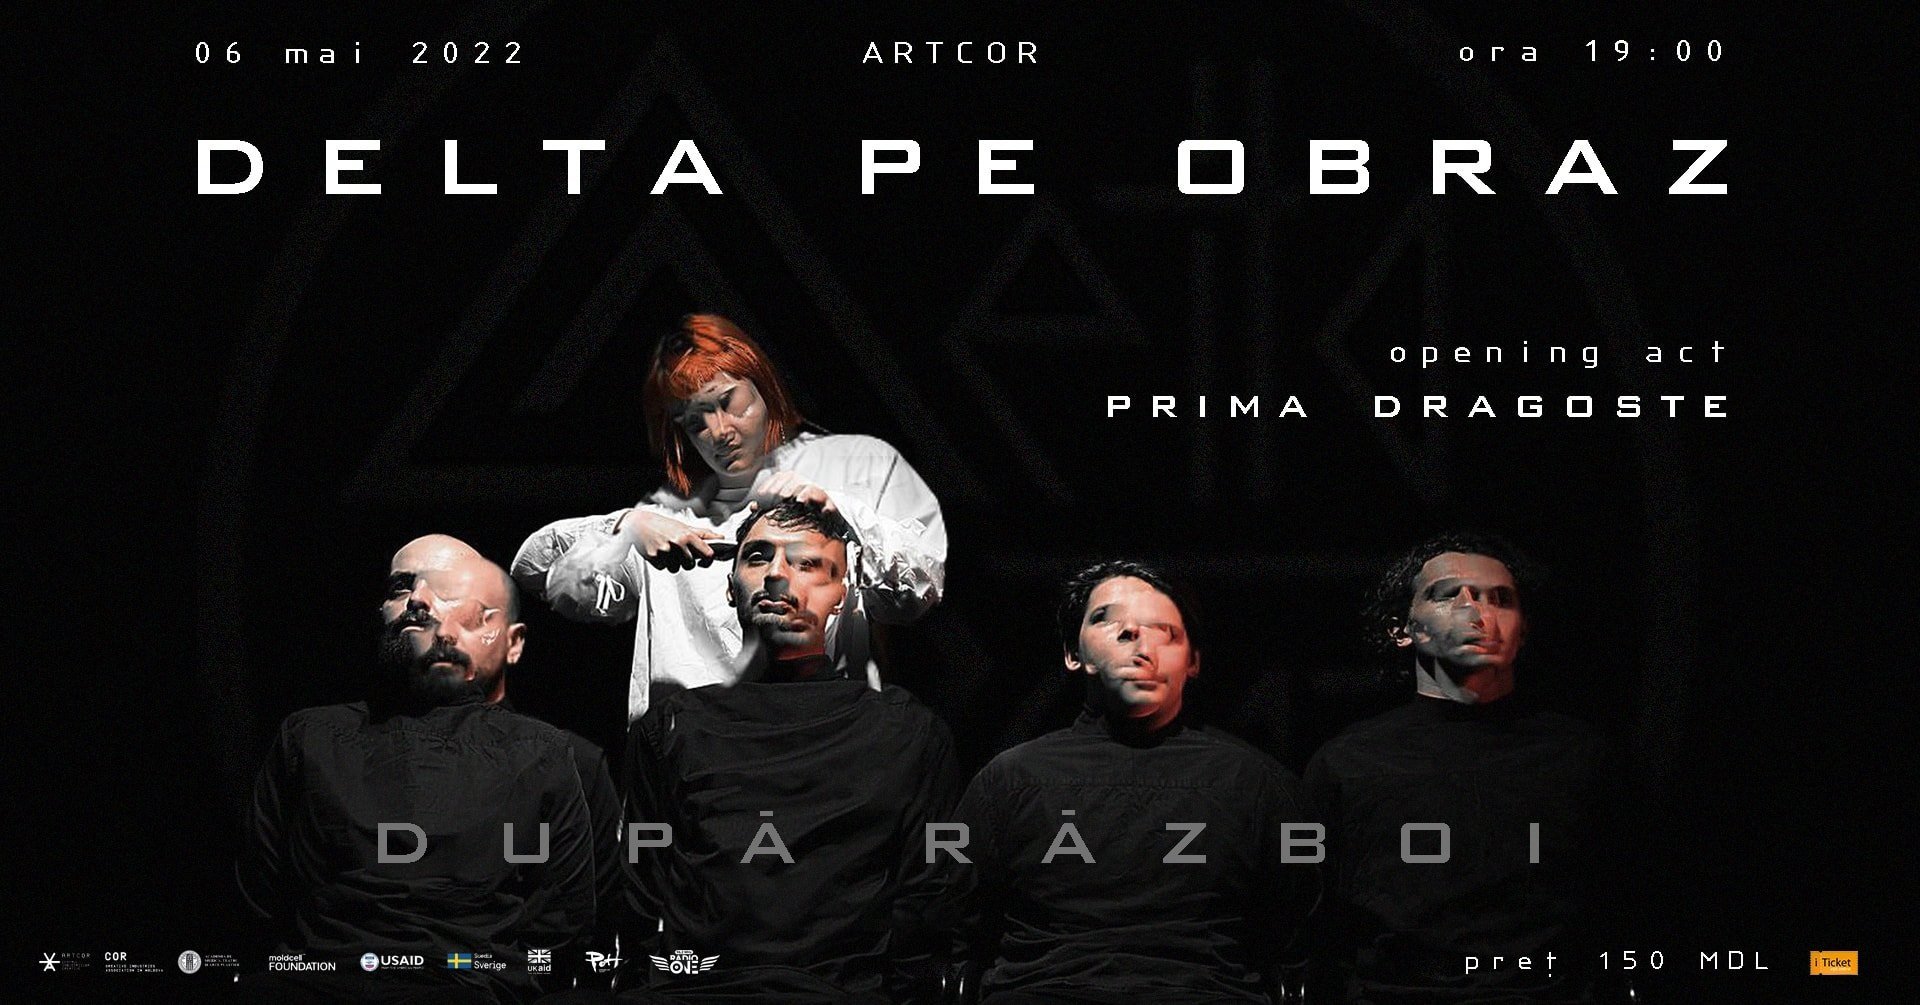 DELTA PE OBRAZ | Artcor | 6 mai